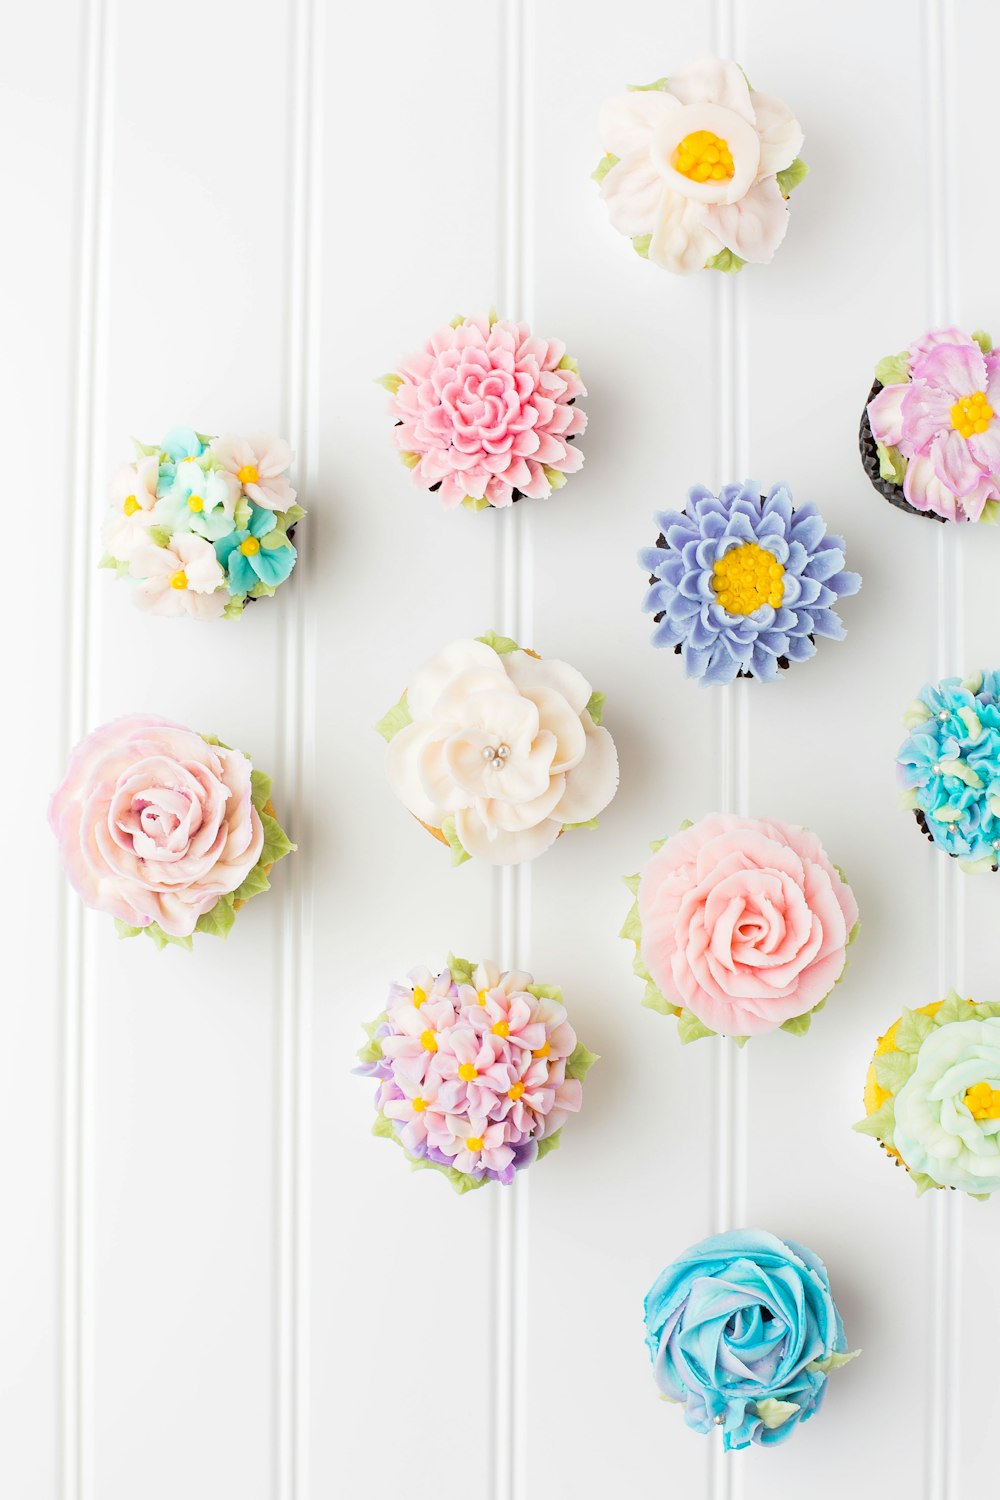 Cupcakes de fleurs sur surface blanche